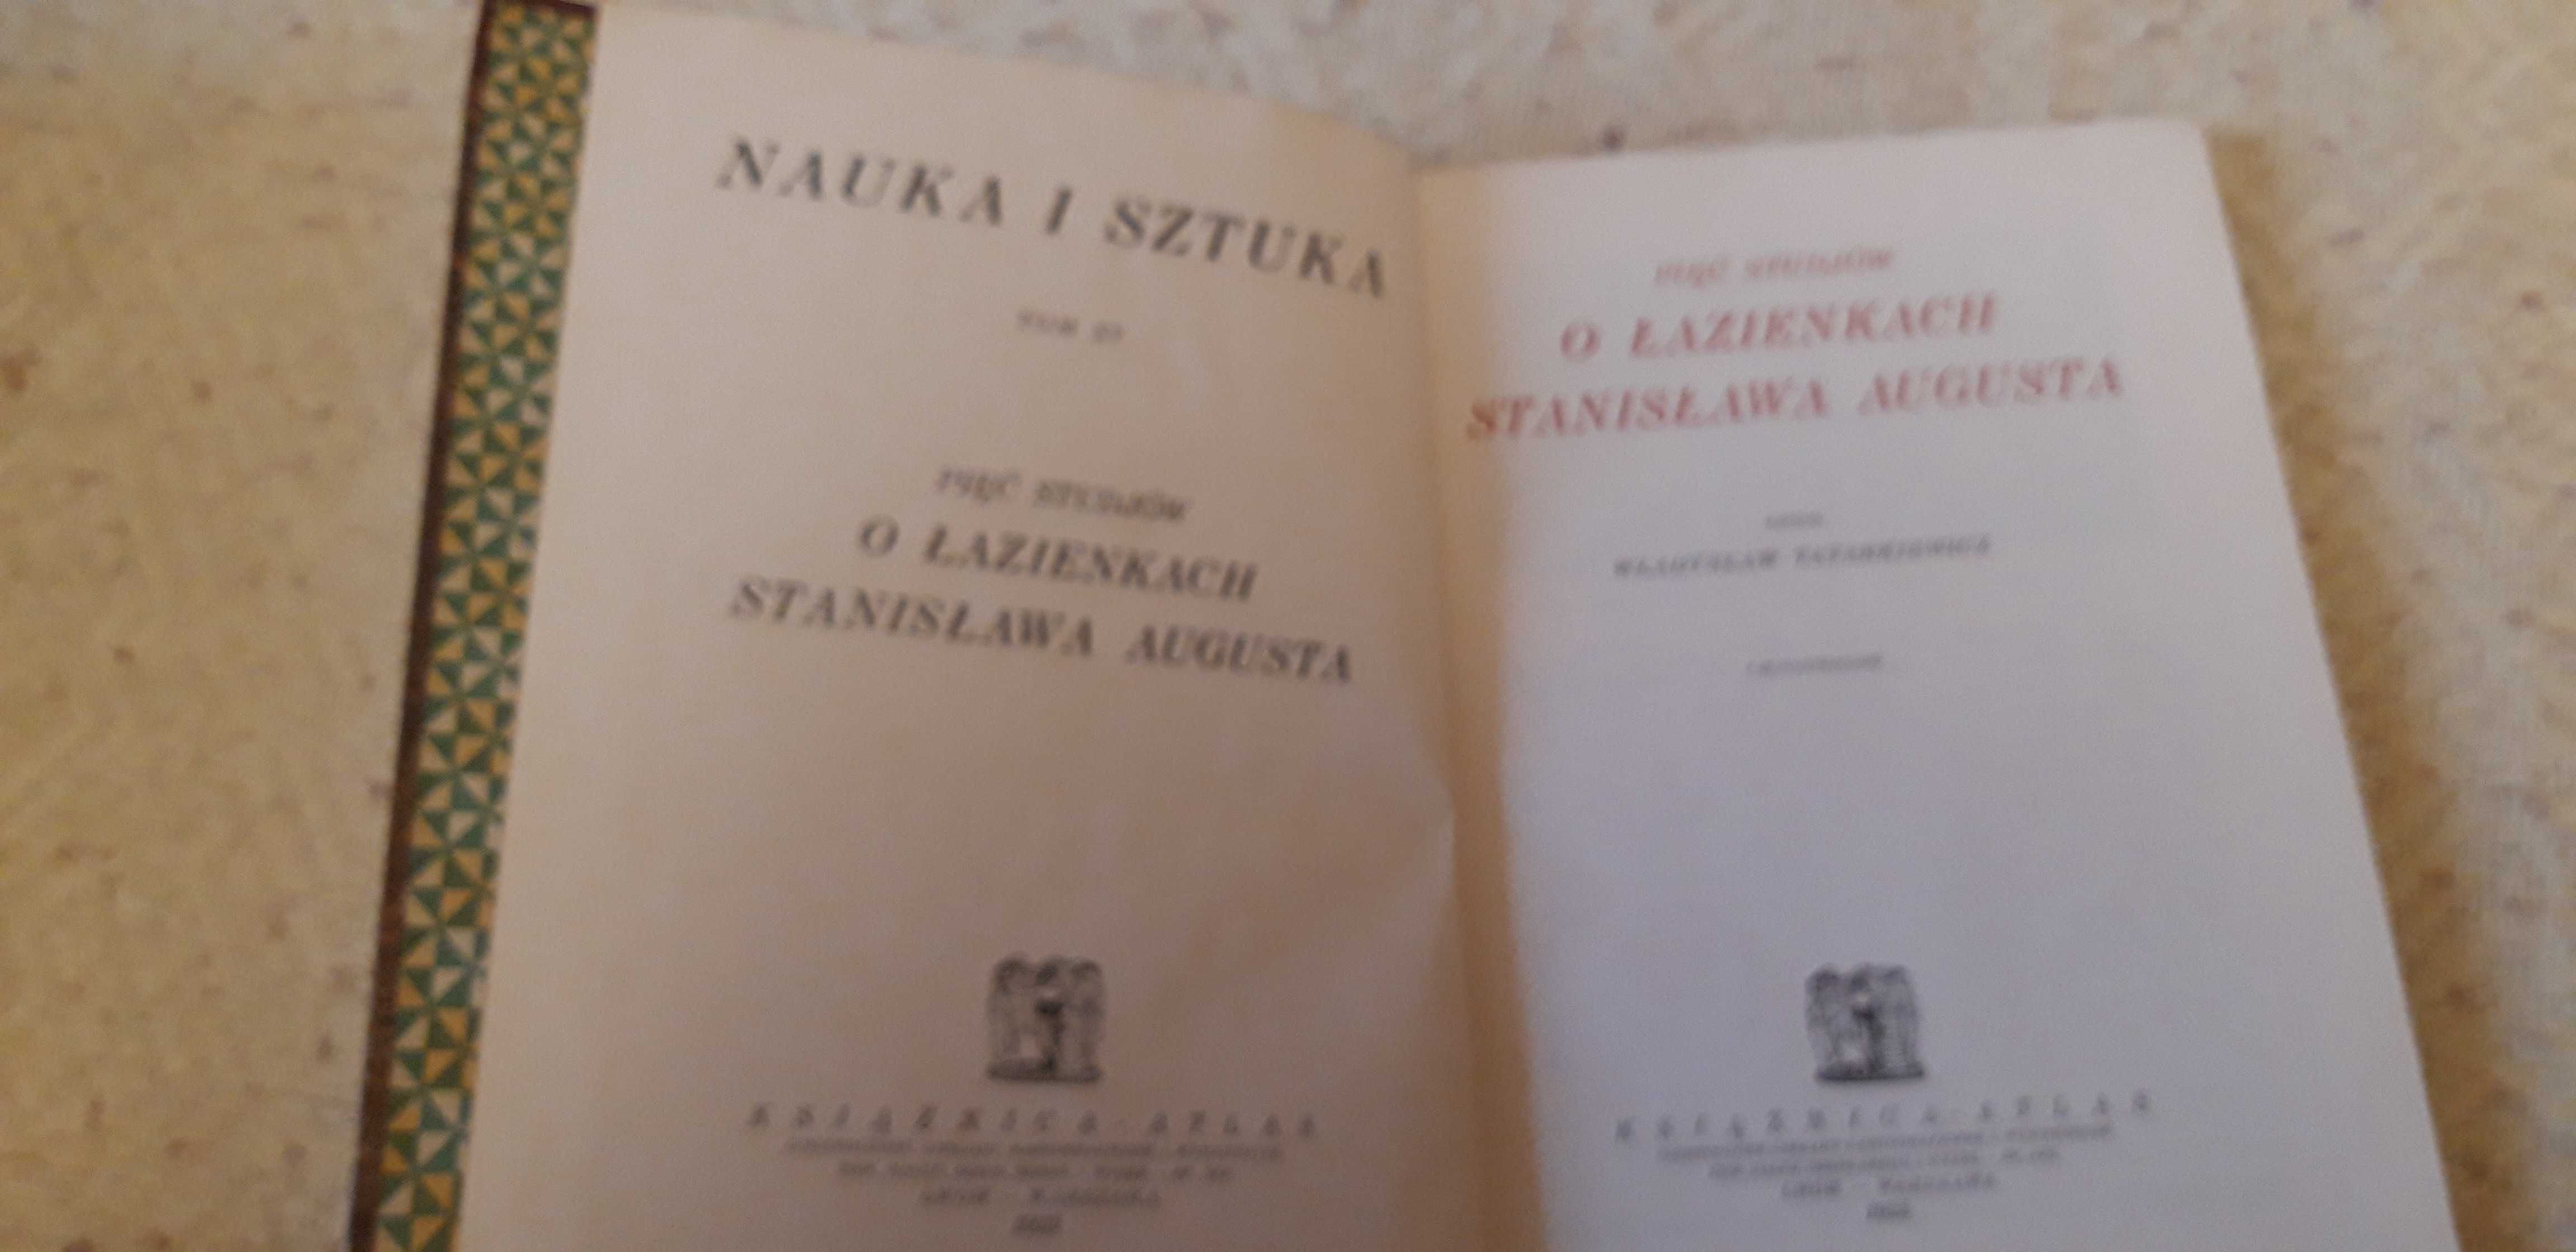 Pięć Studiów o Łazienkach - Lwów1925ilustr.,cudo